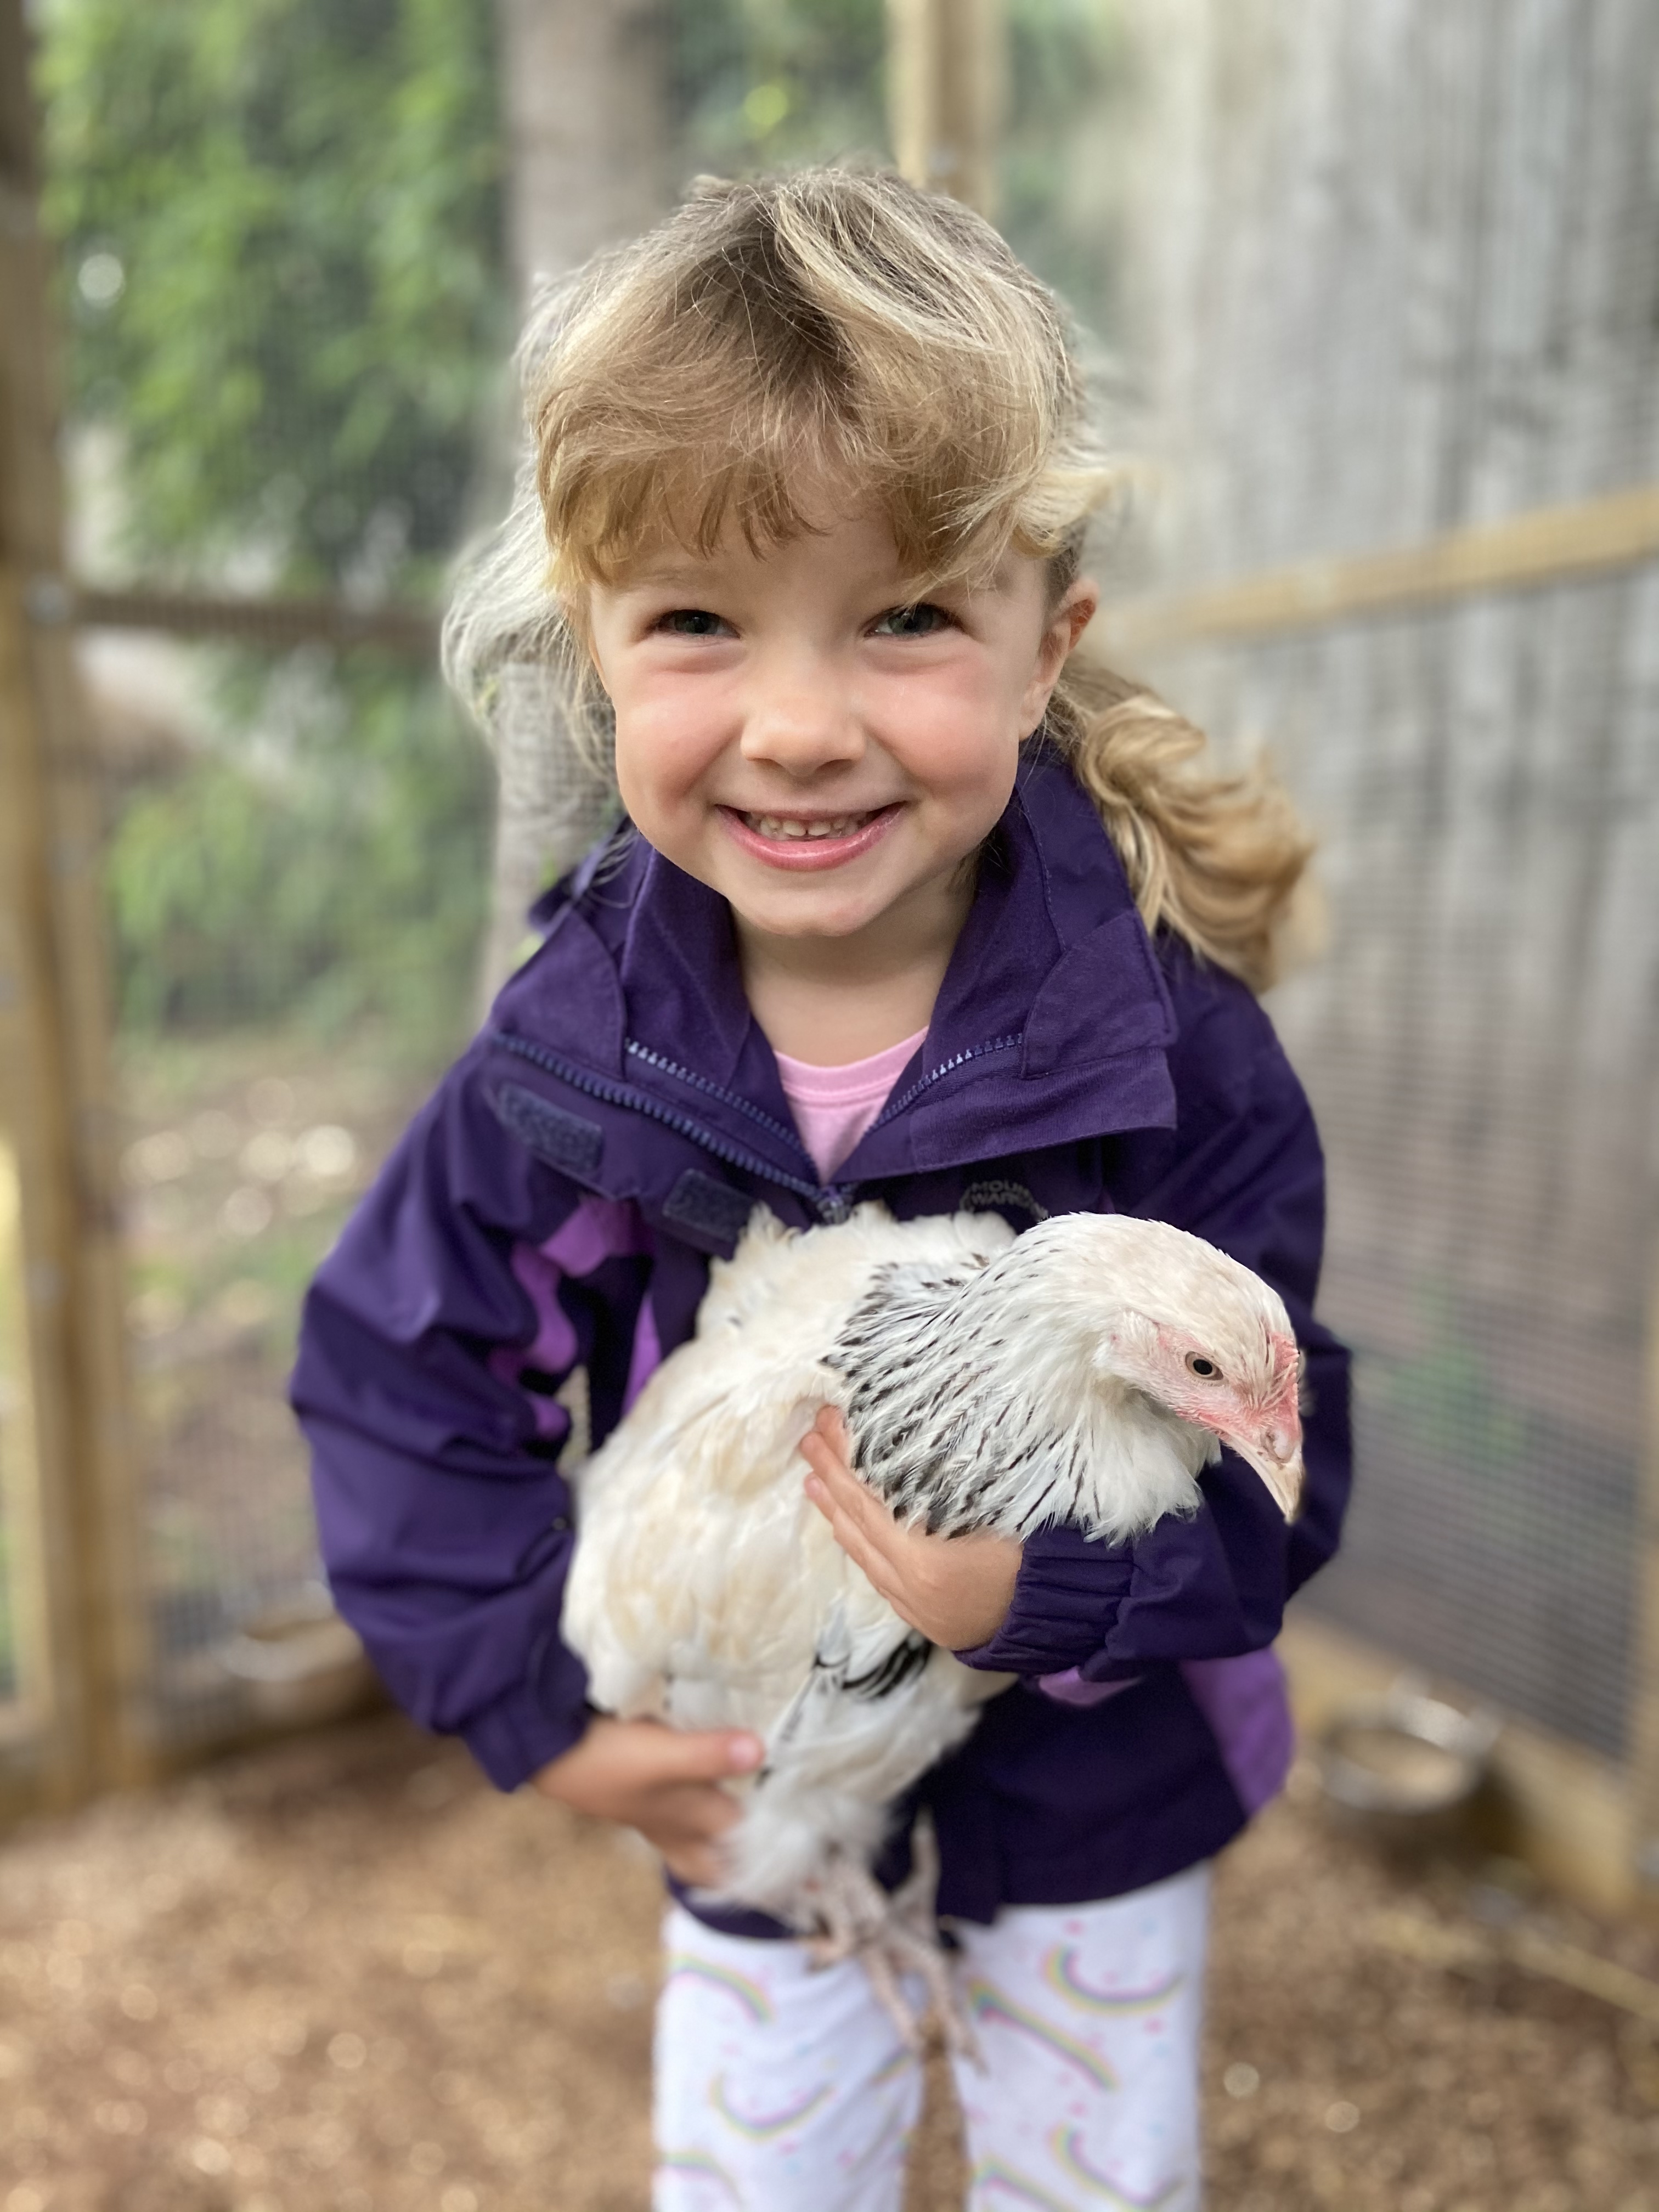 A little girl holding a chicken